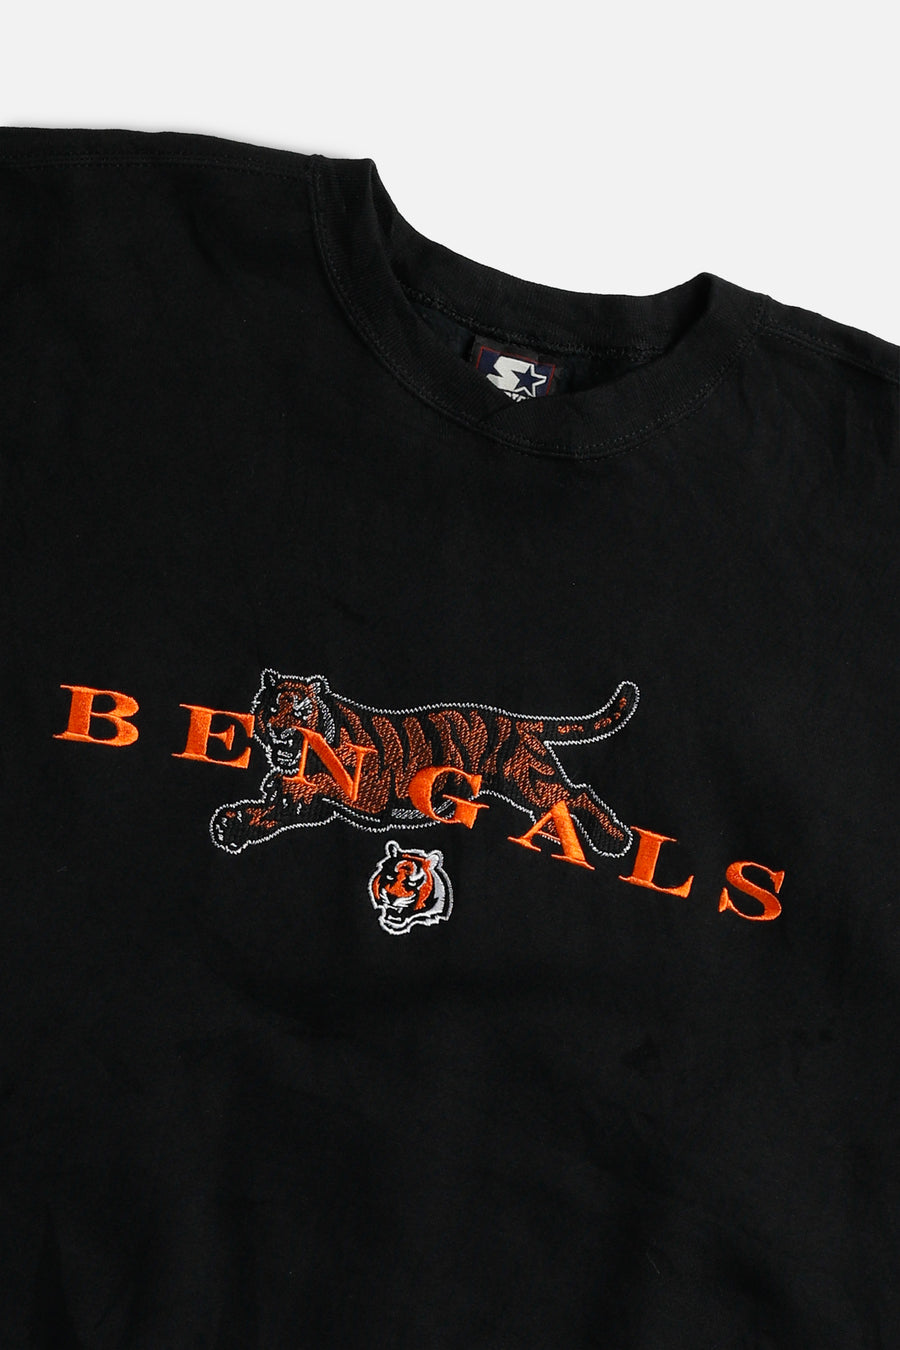 Vintage Cincinnati Bengals NFL Sweatshirt - L